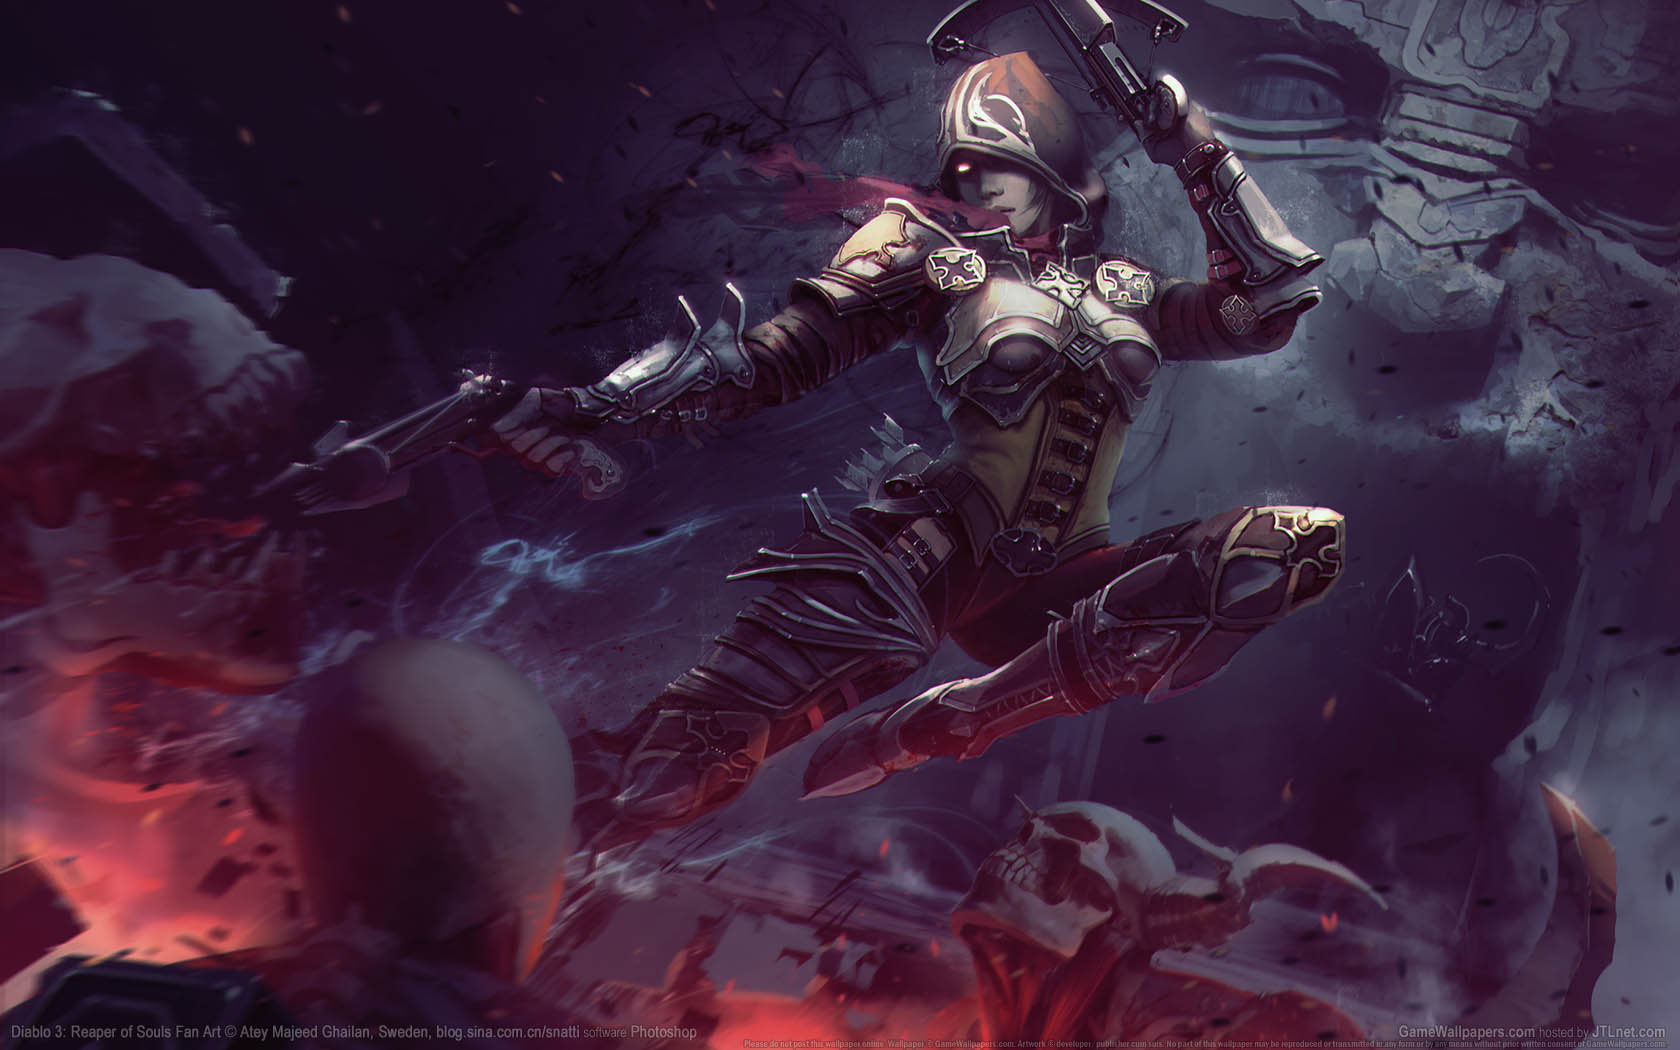 Diablo 3: Reaper of Souls Fan Art fond d'cran 03 1680x1050